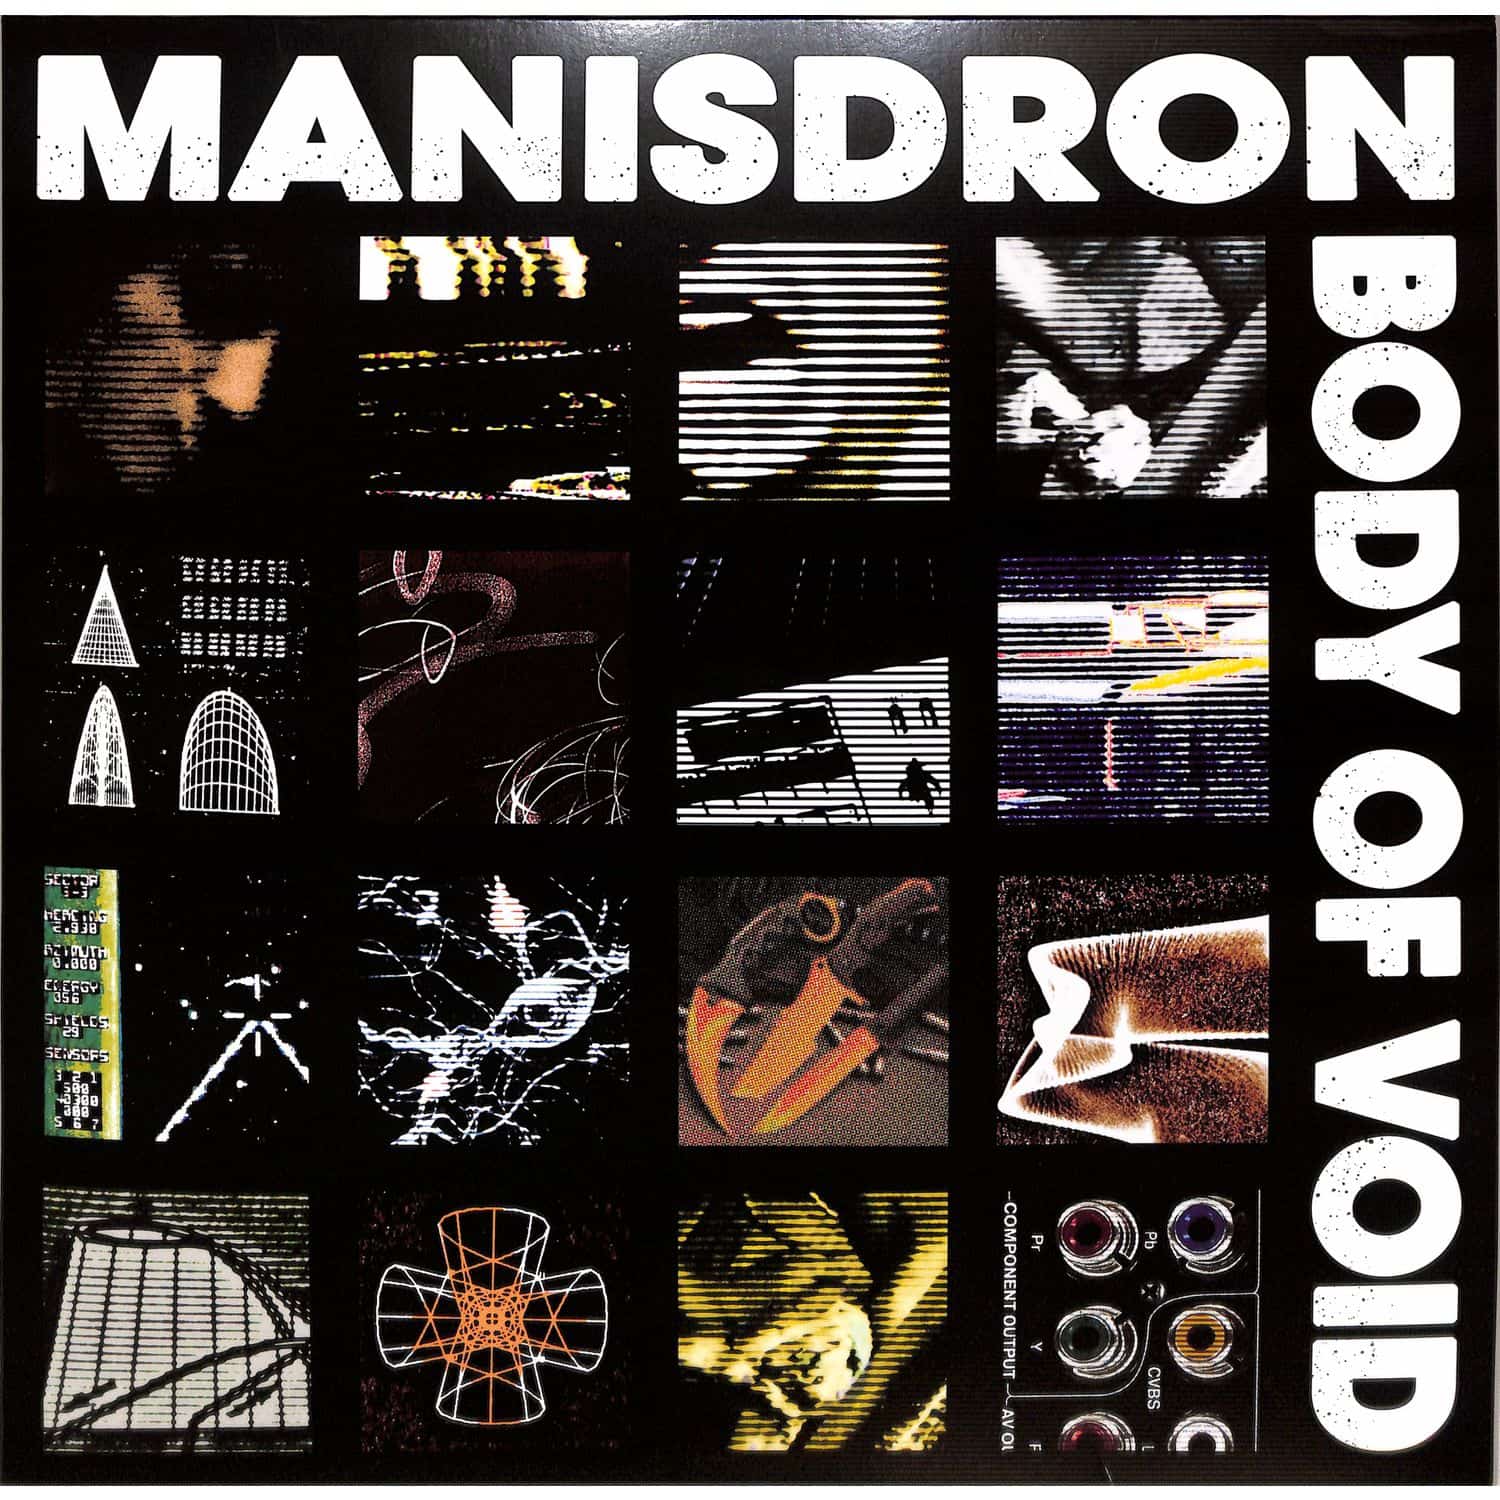 Manisdron - BODY OF VOID 